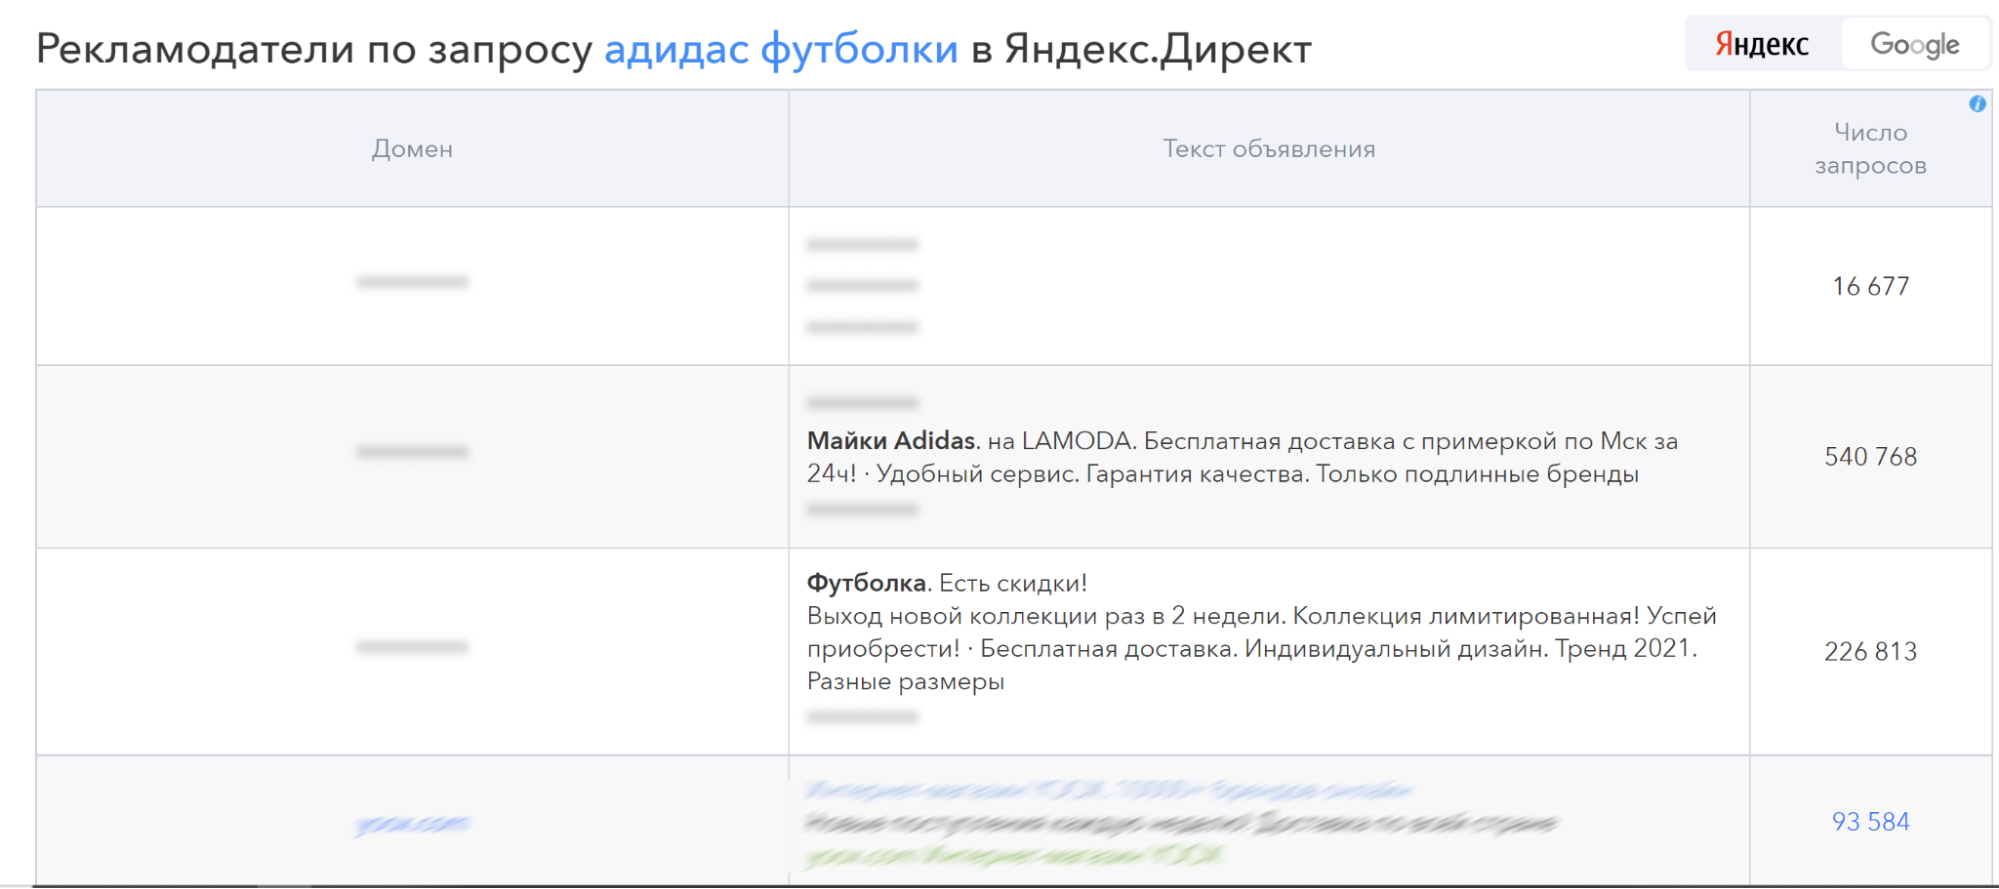 Рекламодатели по запросу “адидас футболки” в «Яндекс.Директ»